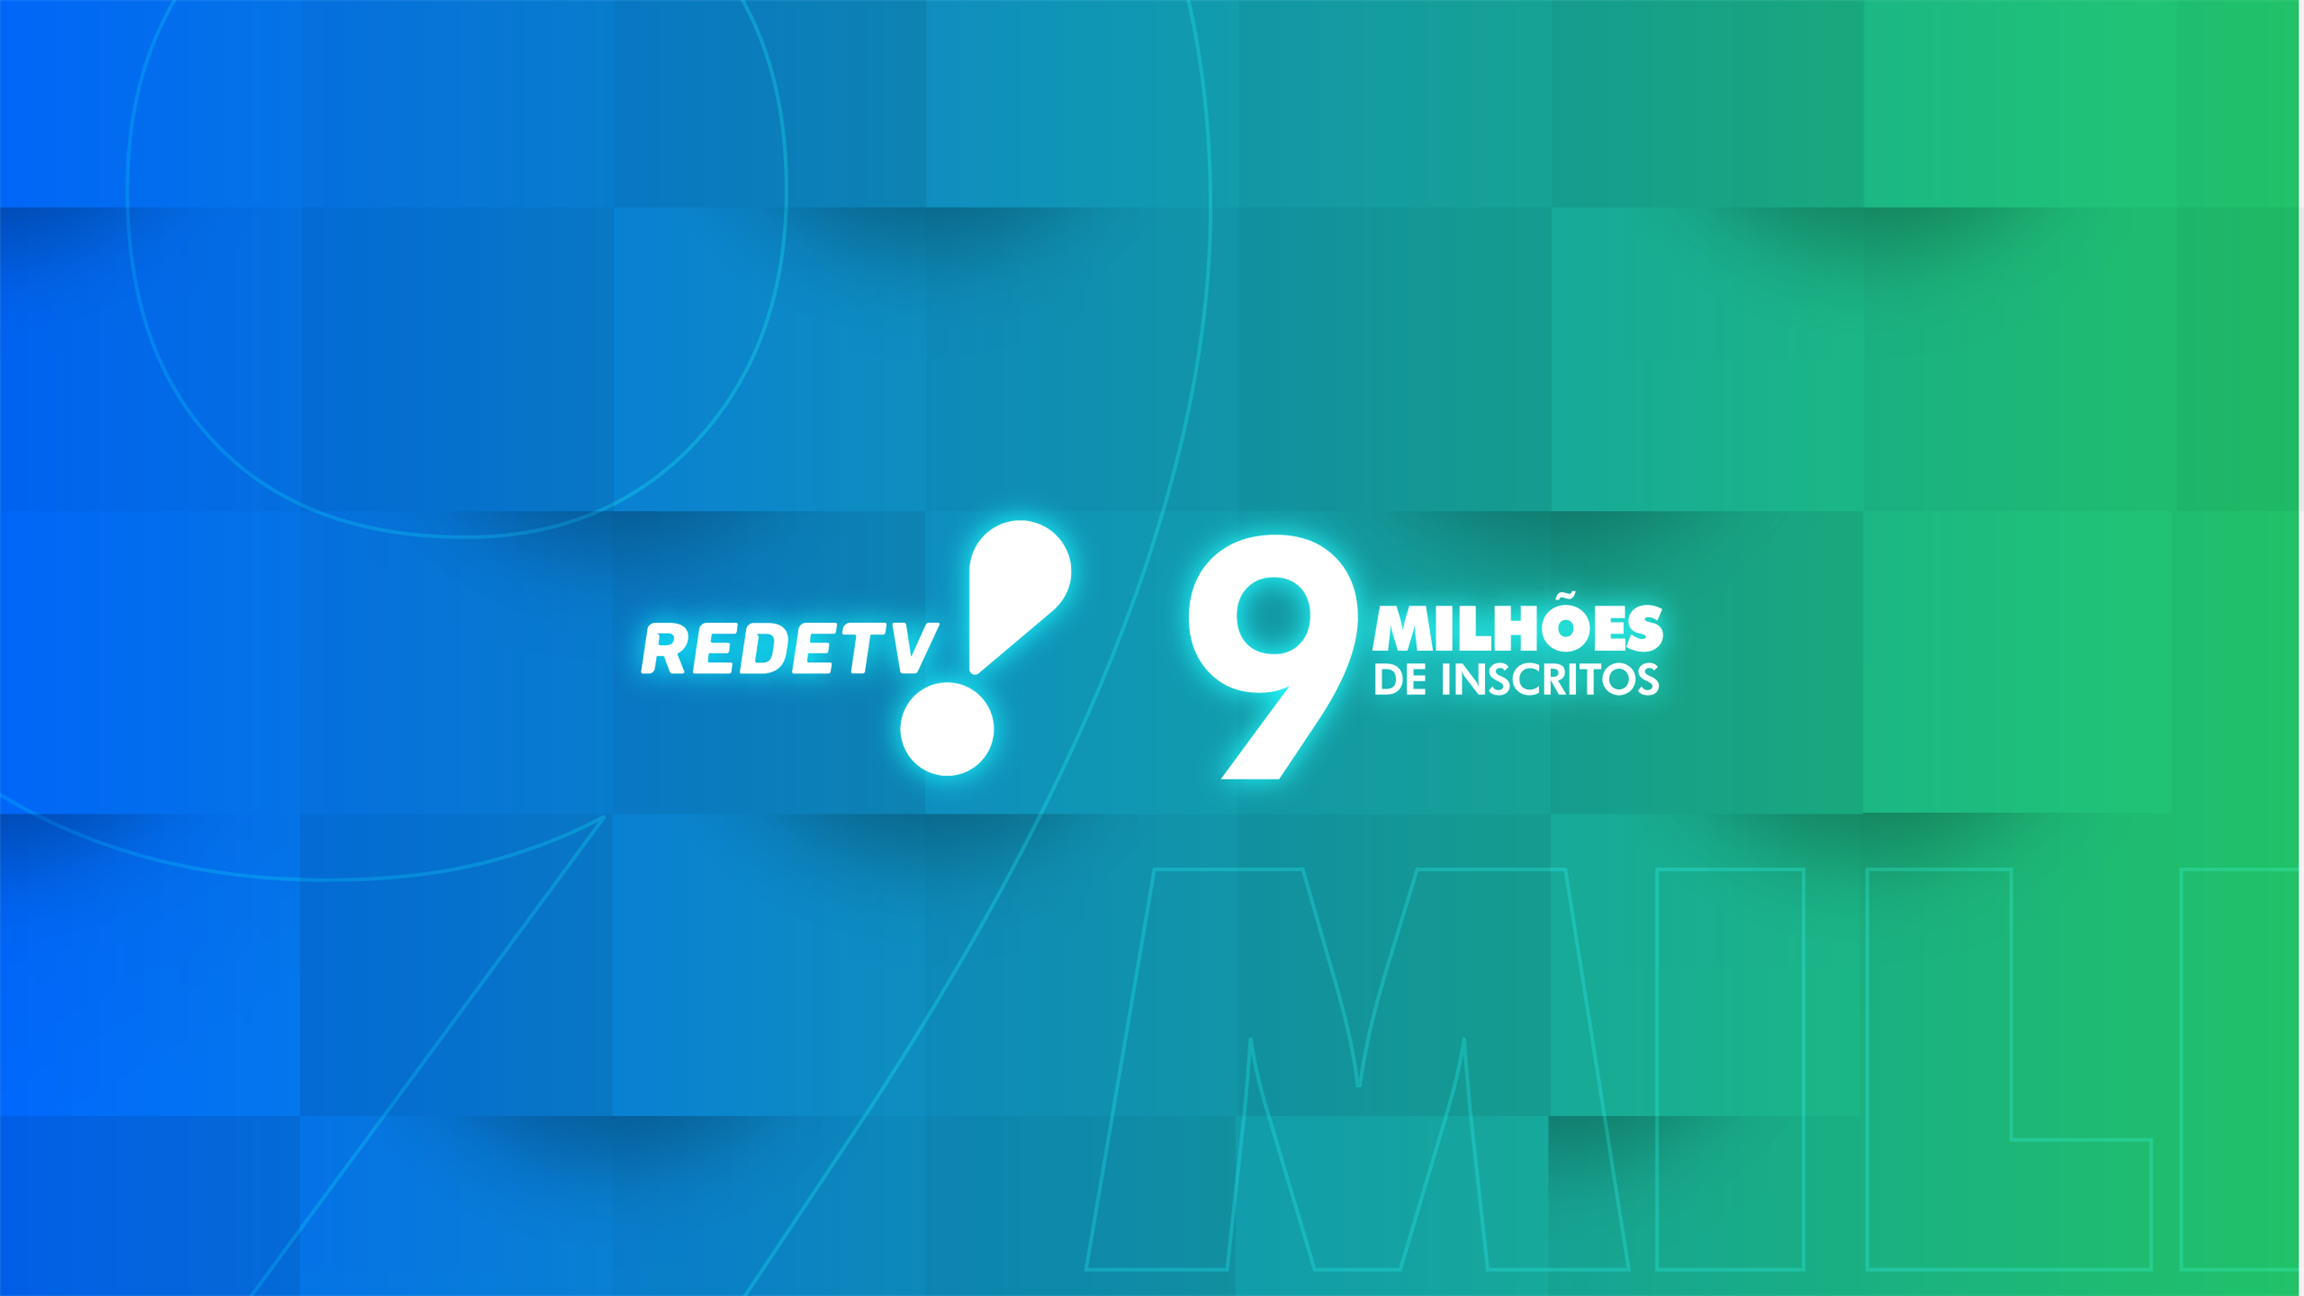 RedeTV! alcança 9 milhões de inscritos no YouTube